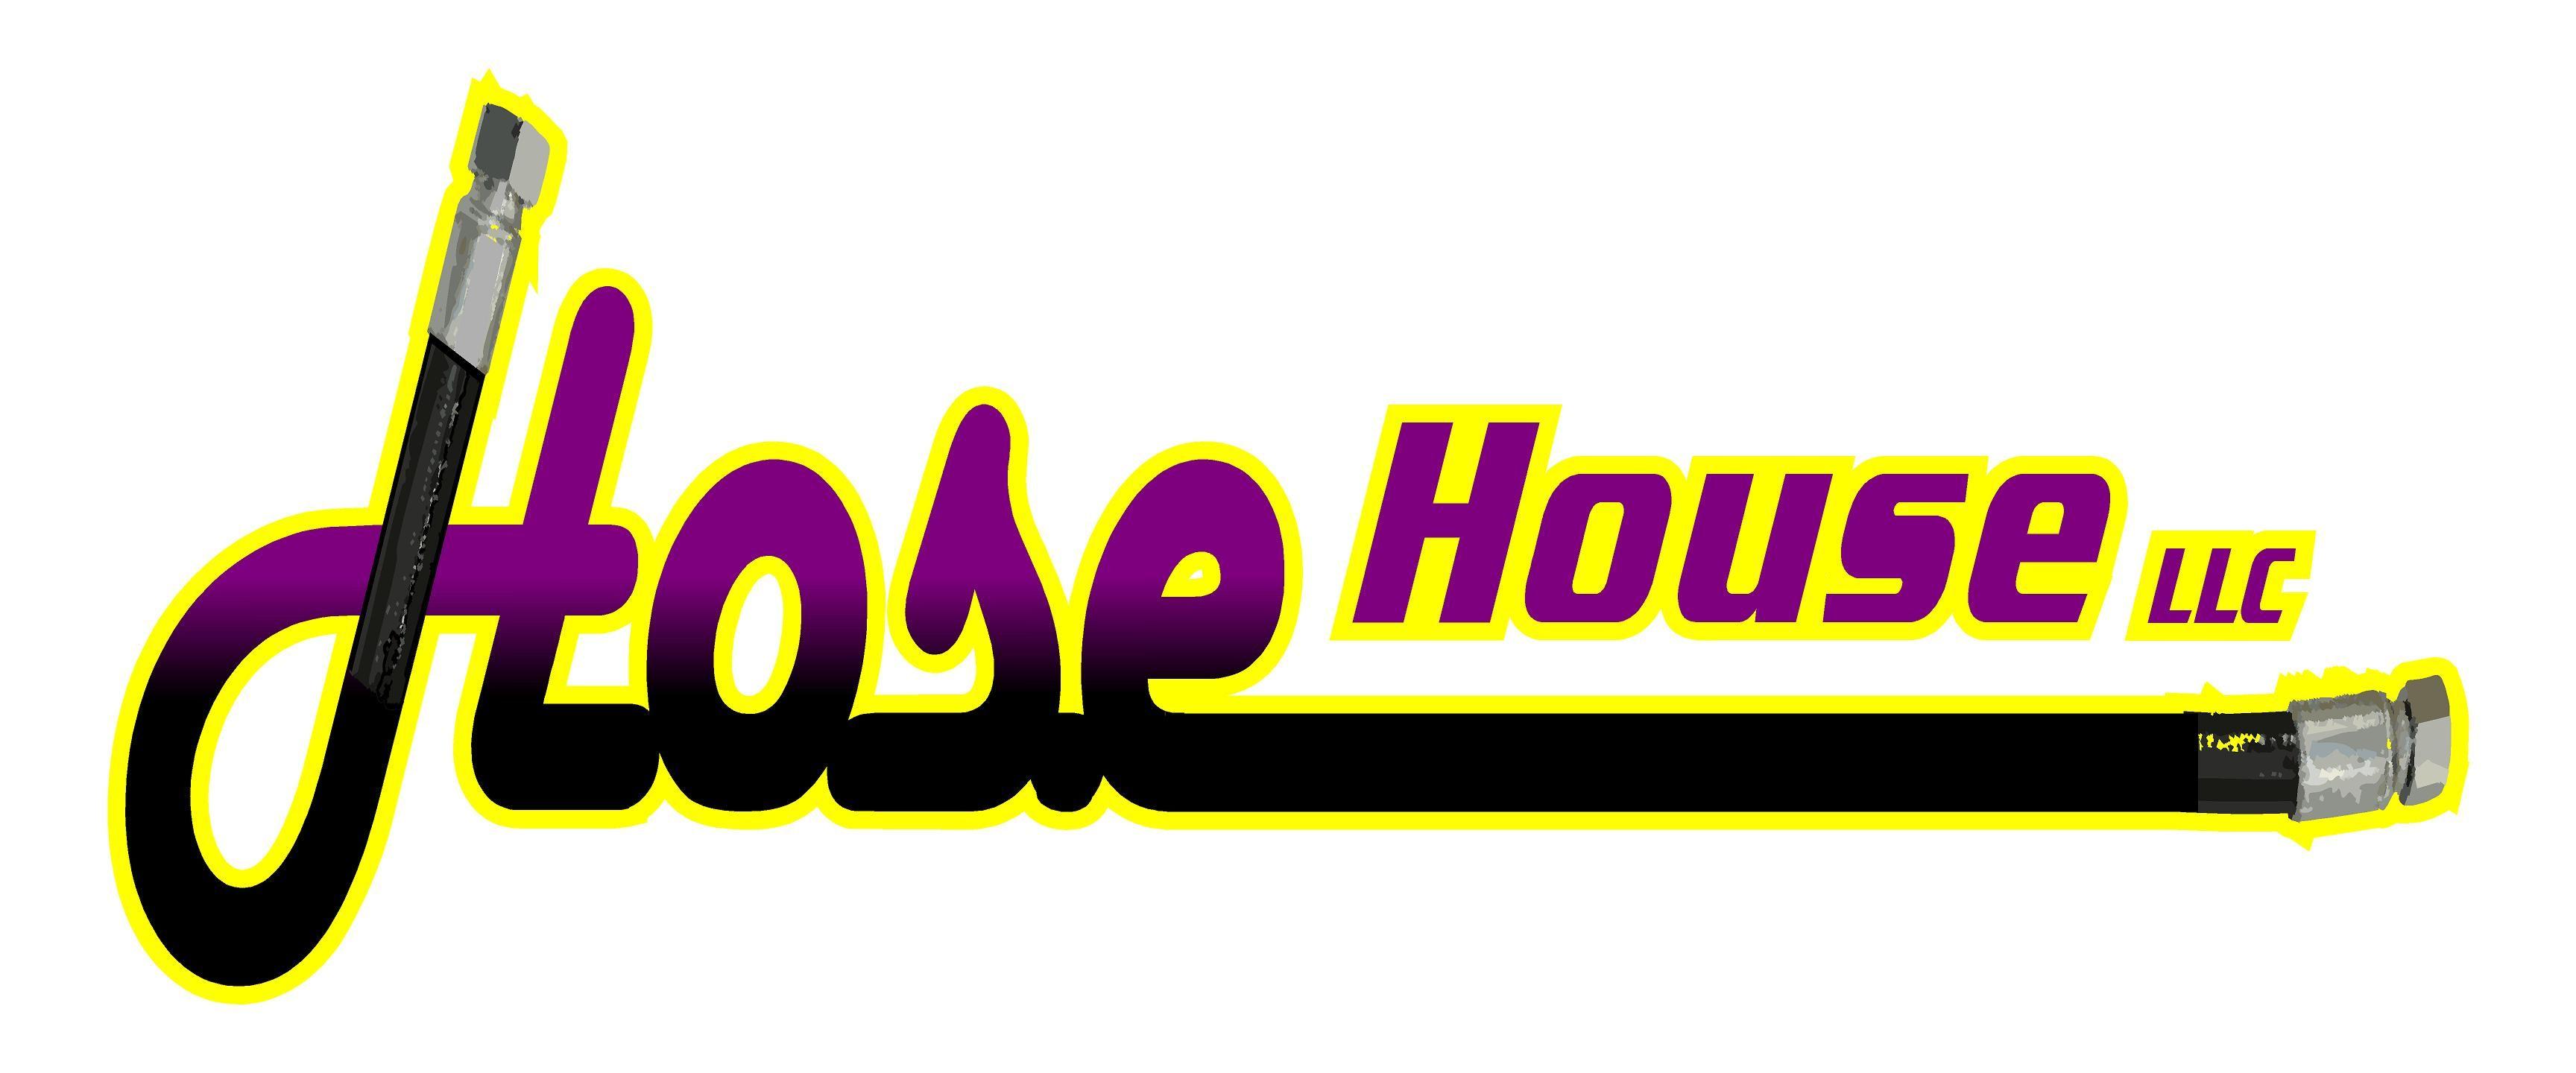 Hose Logo - Hosehouse